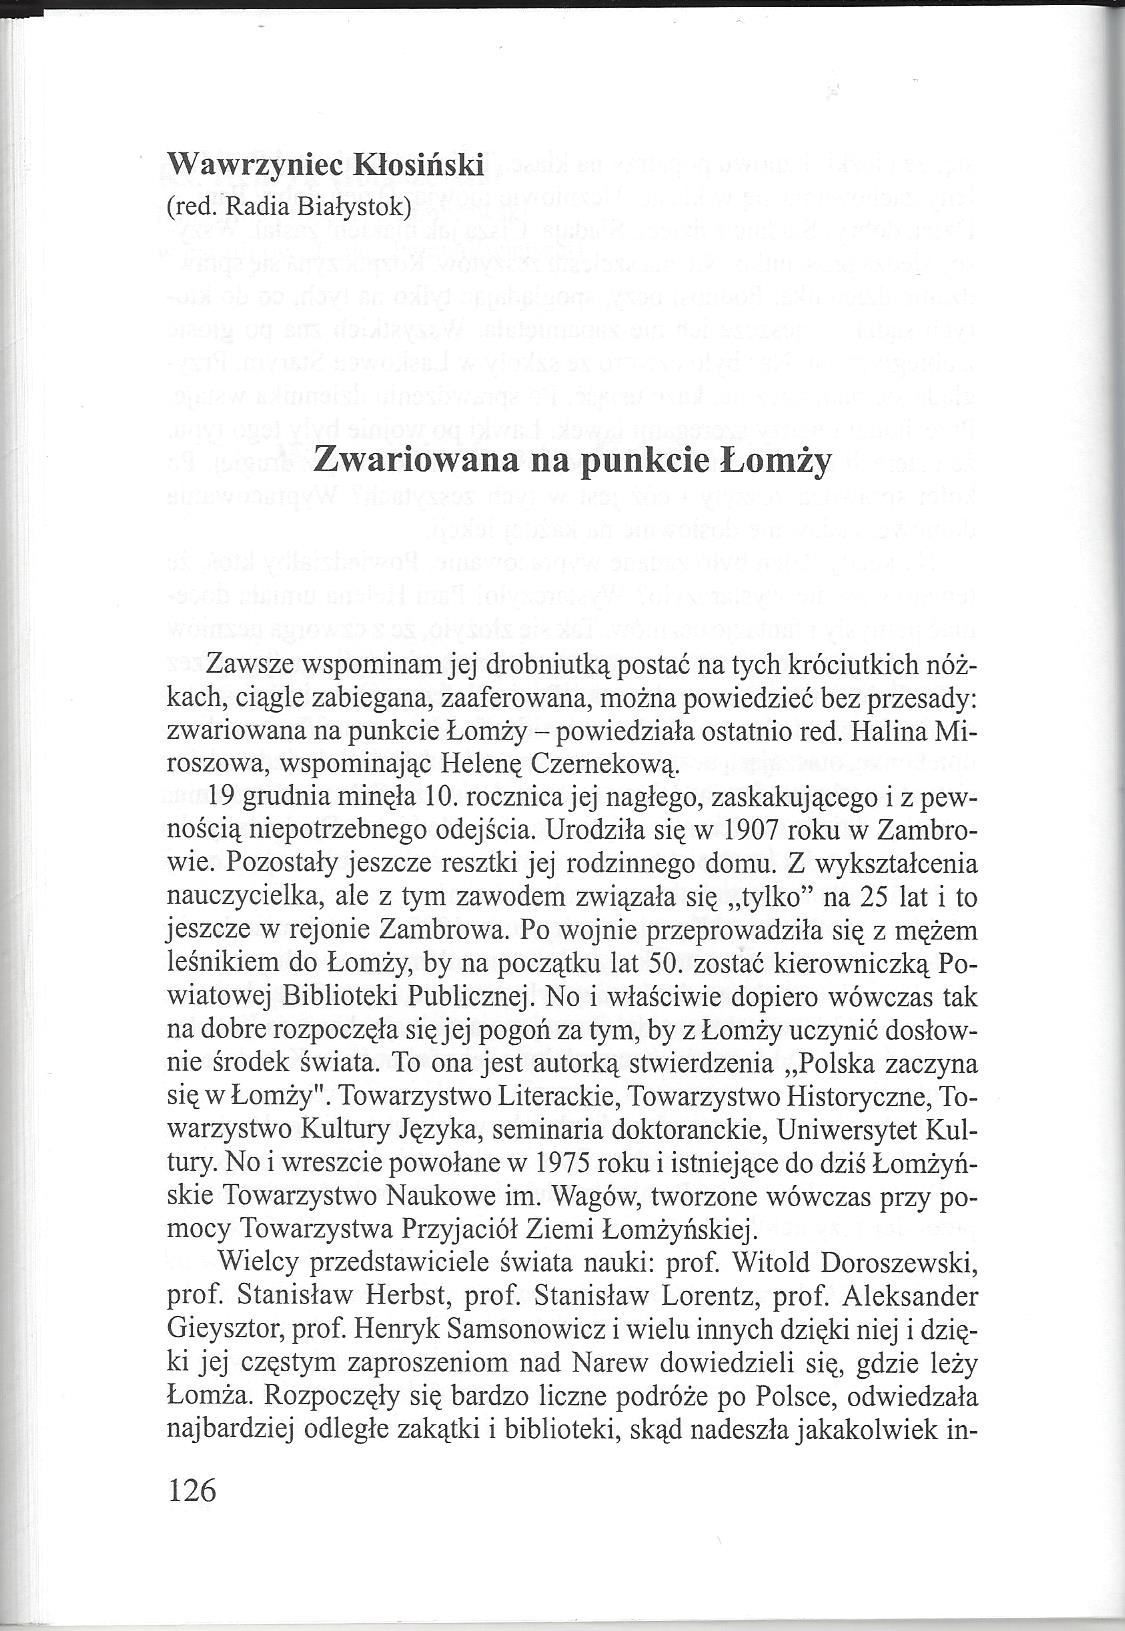 30. Janusz Gwardiak – „Pasjonatka Ziemi Łomżyńskiej”, Łomża 2002.